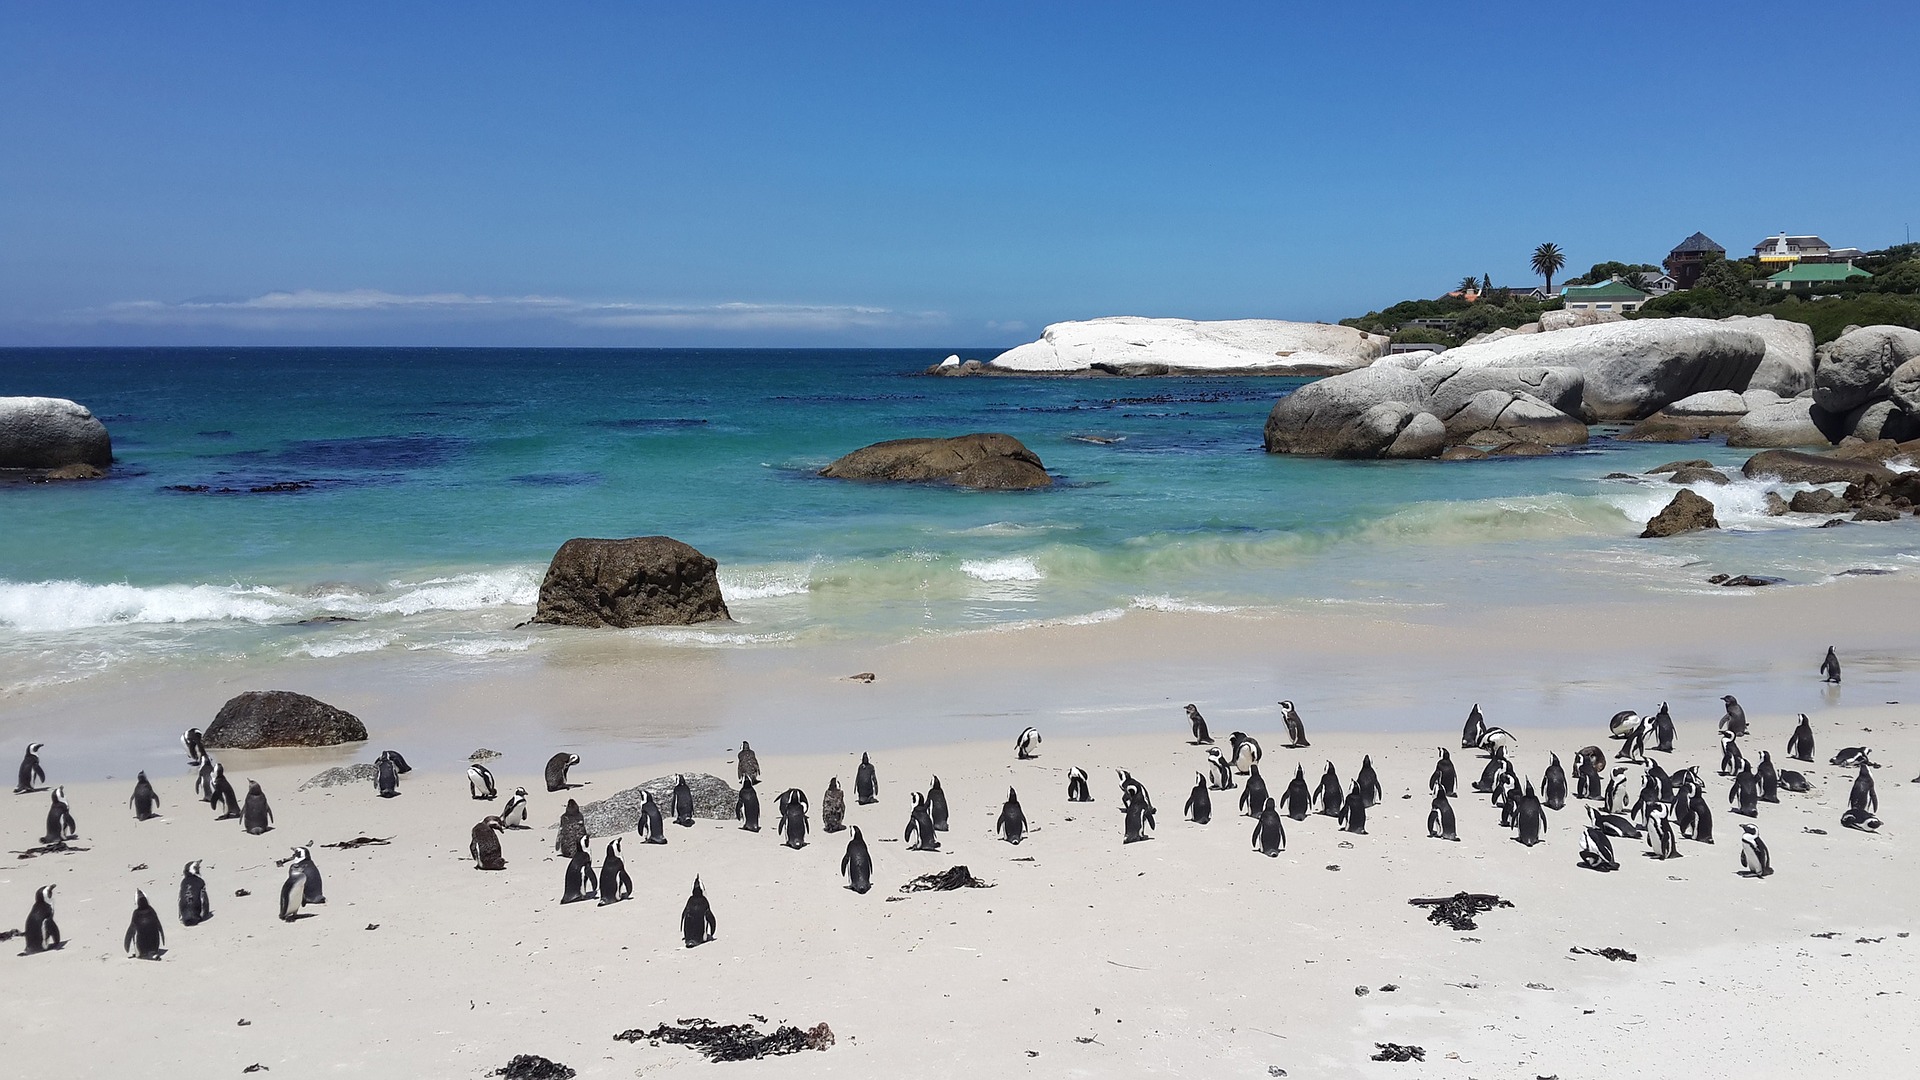 Cape Town - penguins at Boulders Beach